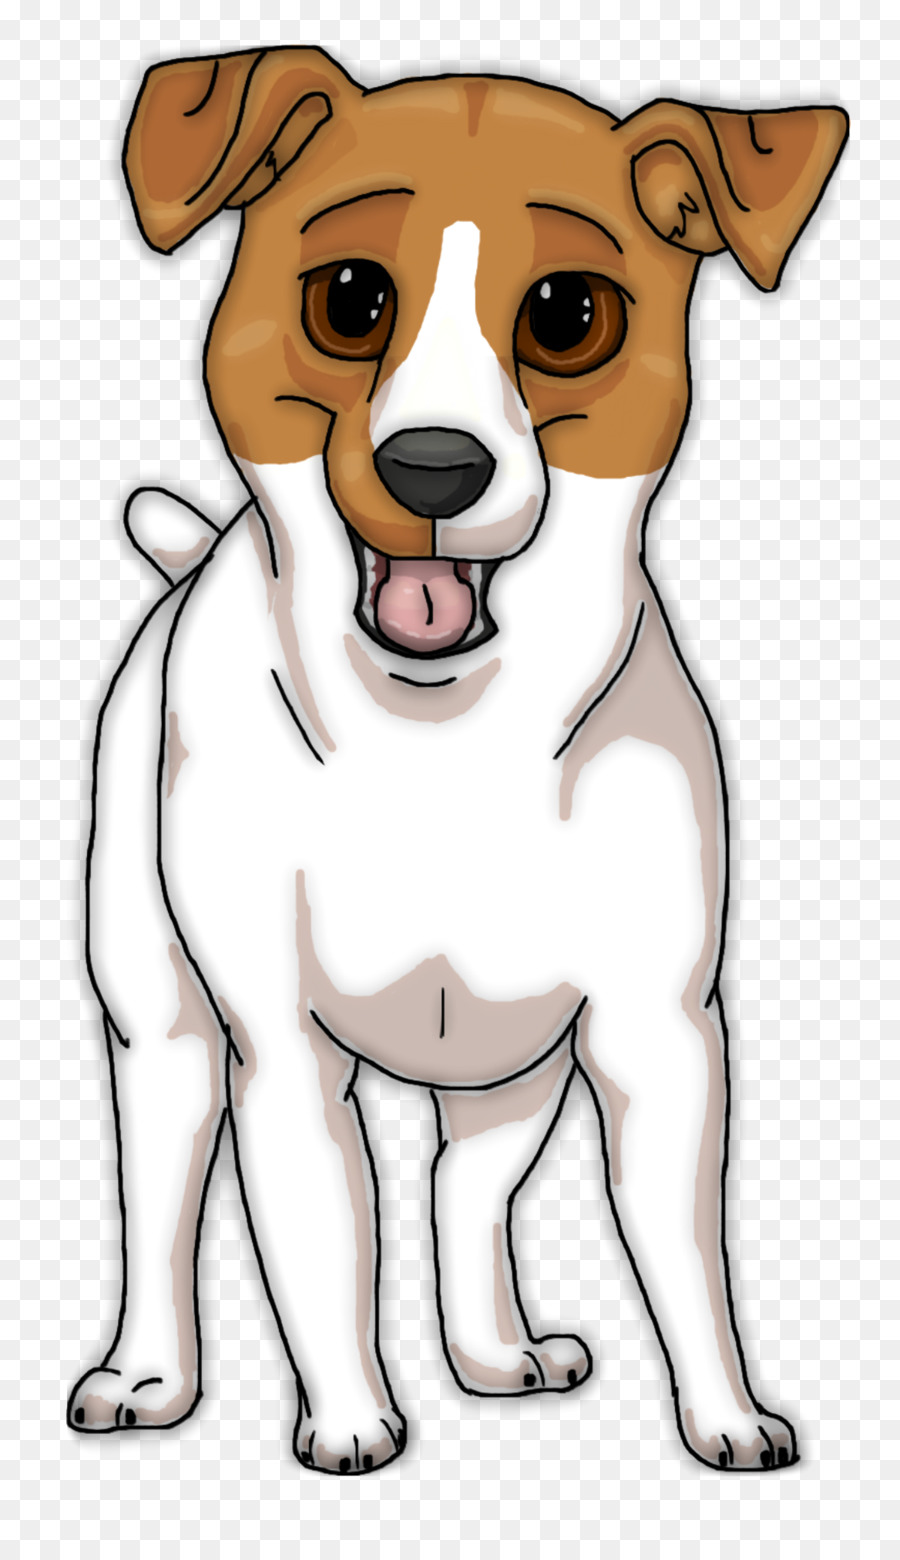 Jack-Russell-Terrier Welpen-Ratte-Terrier, Shih-Tzu, Zeichnung - Jack